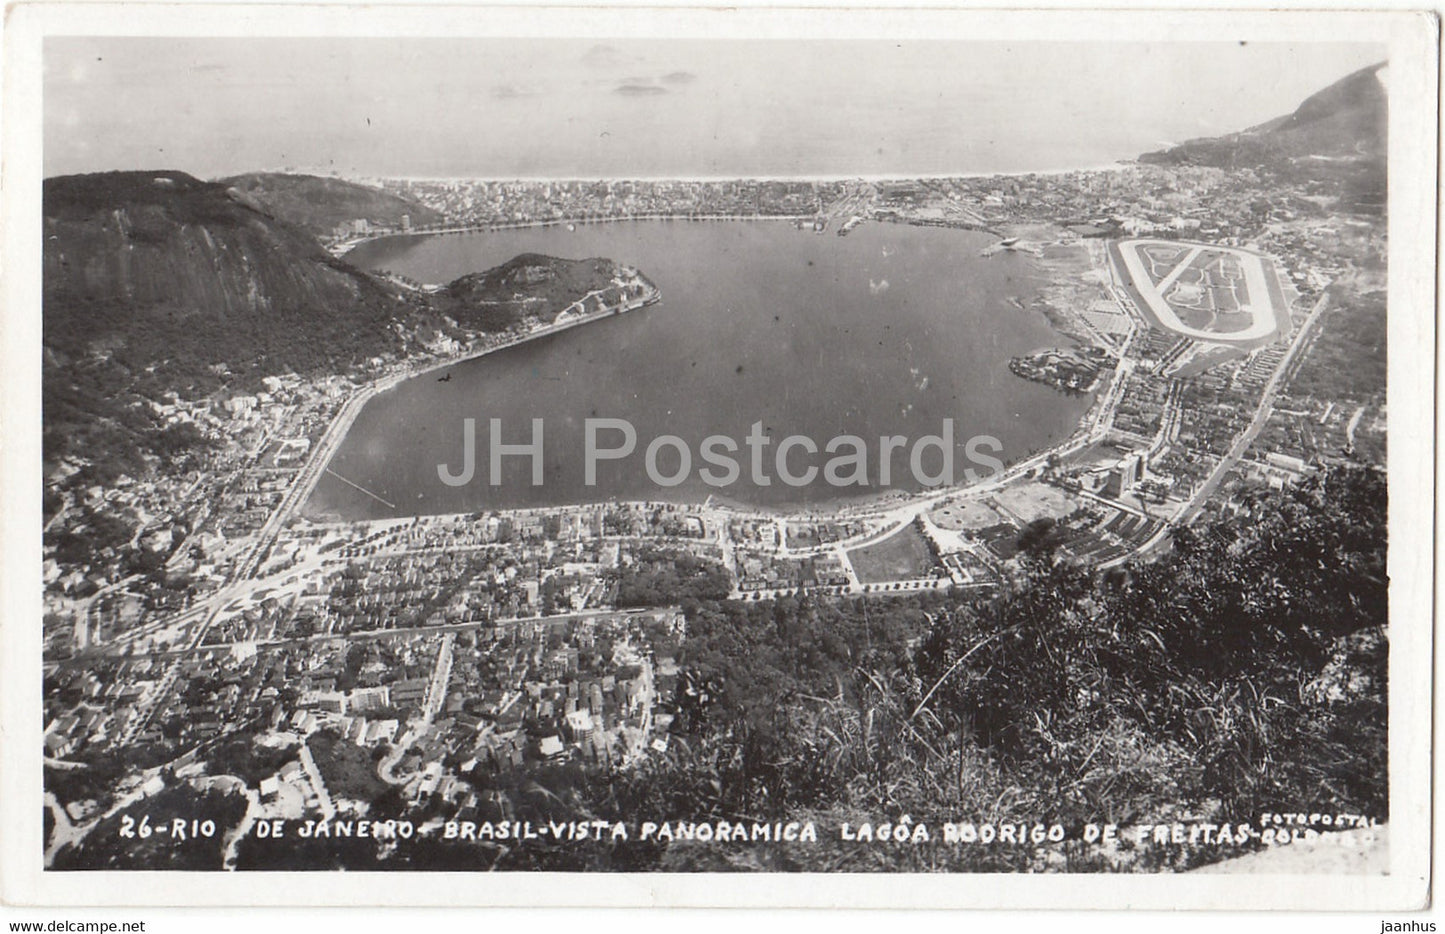 Rio de Janeiro - Brasil Vista Panoramica - Lagoa Rodrigo de Freitas - old postcard - 1959 - Brazil - used - JH Postcards